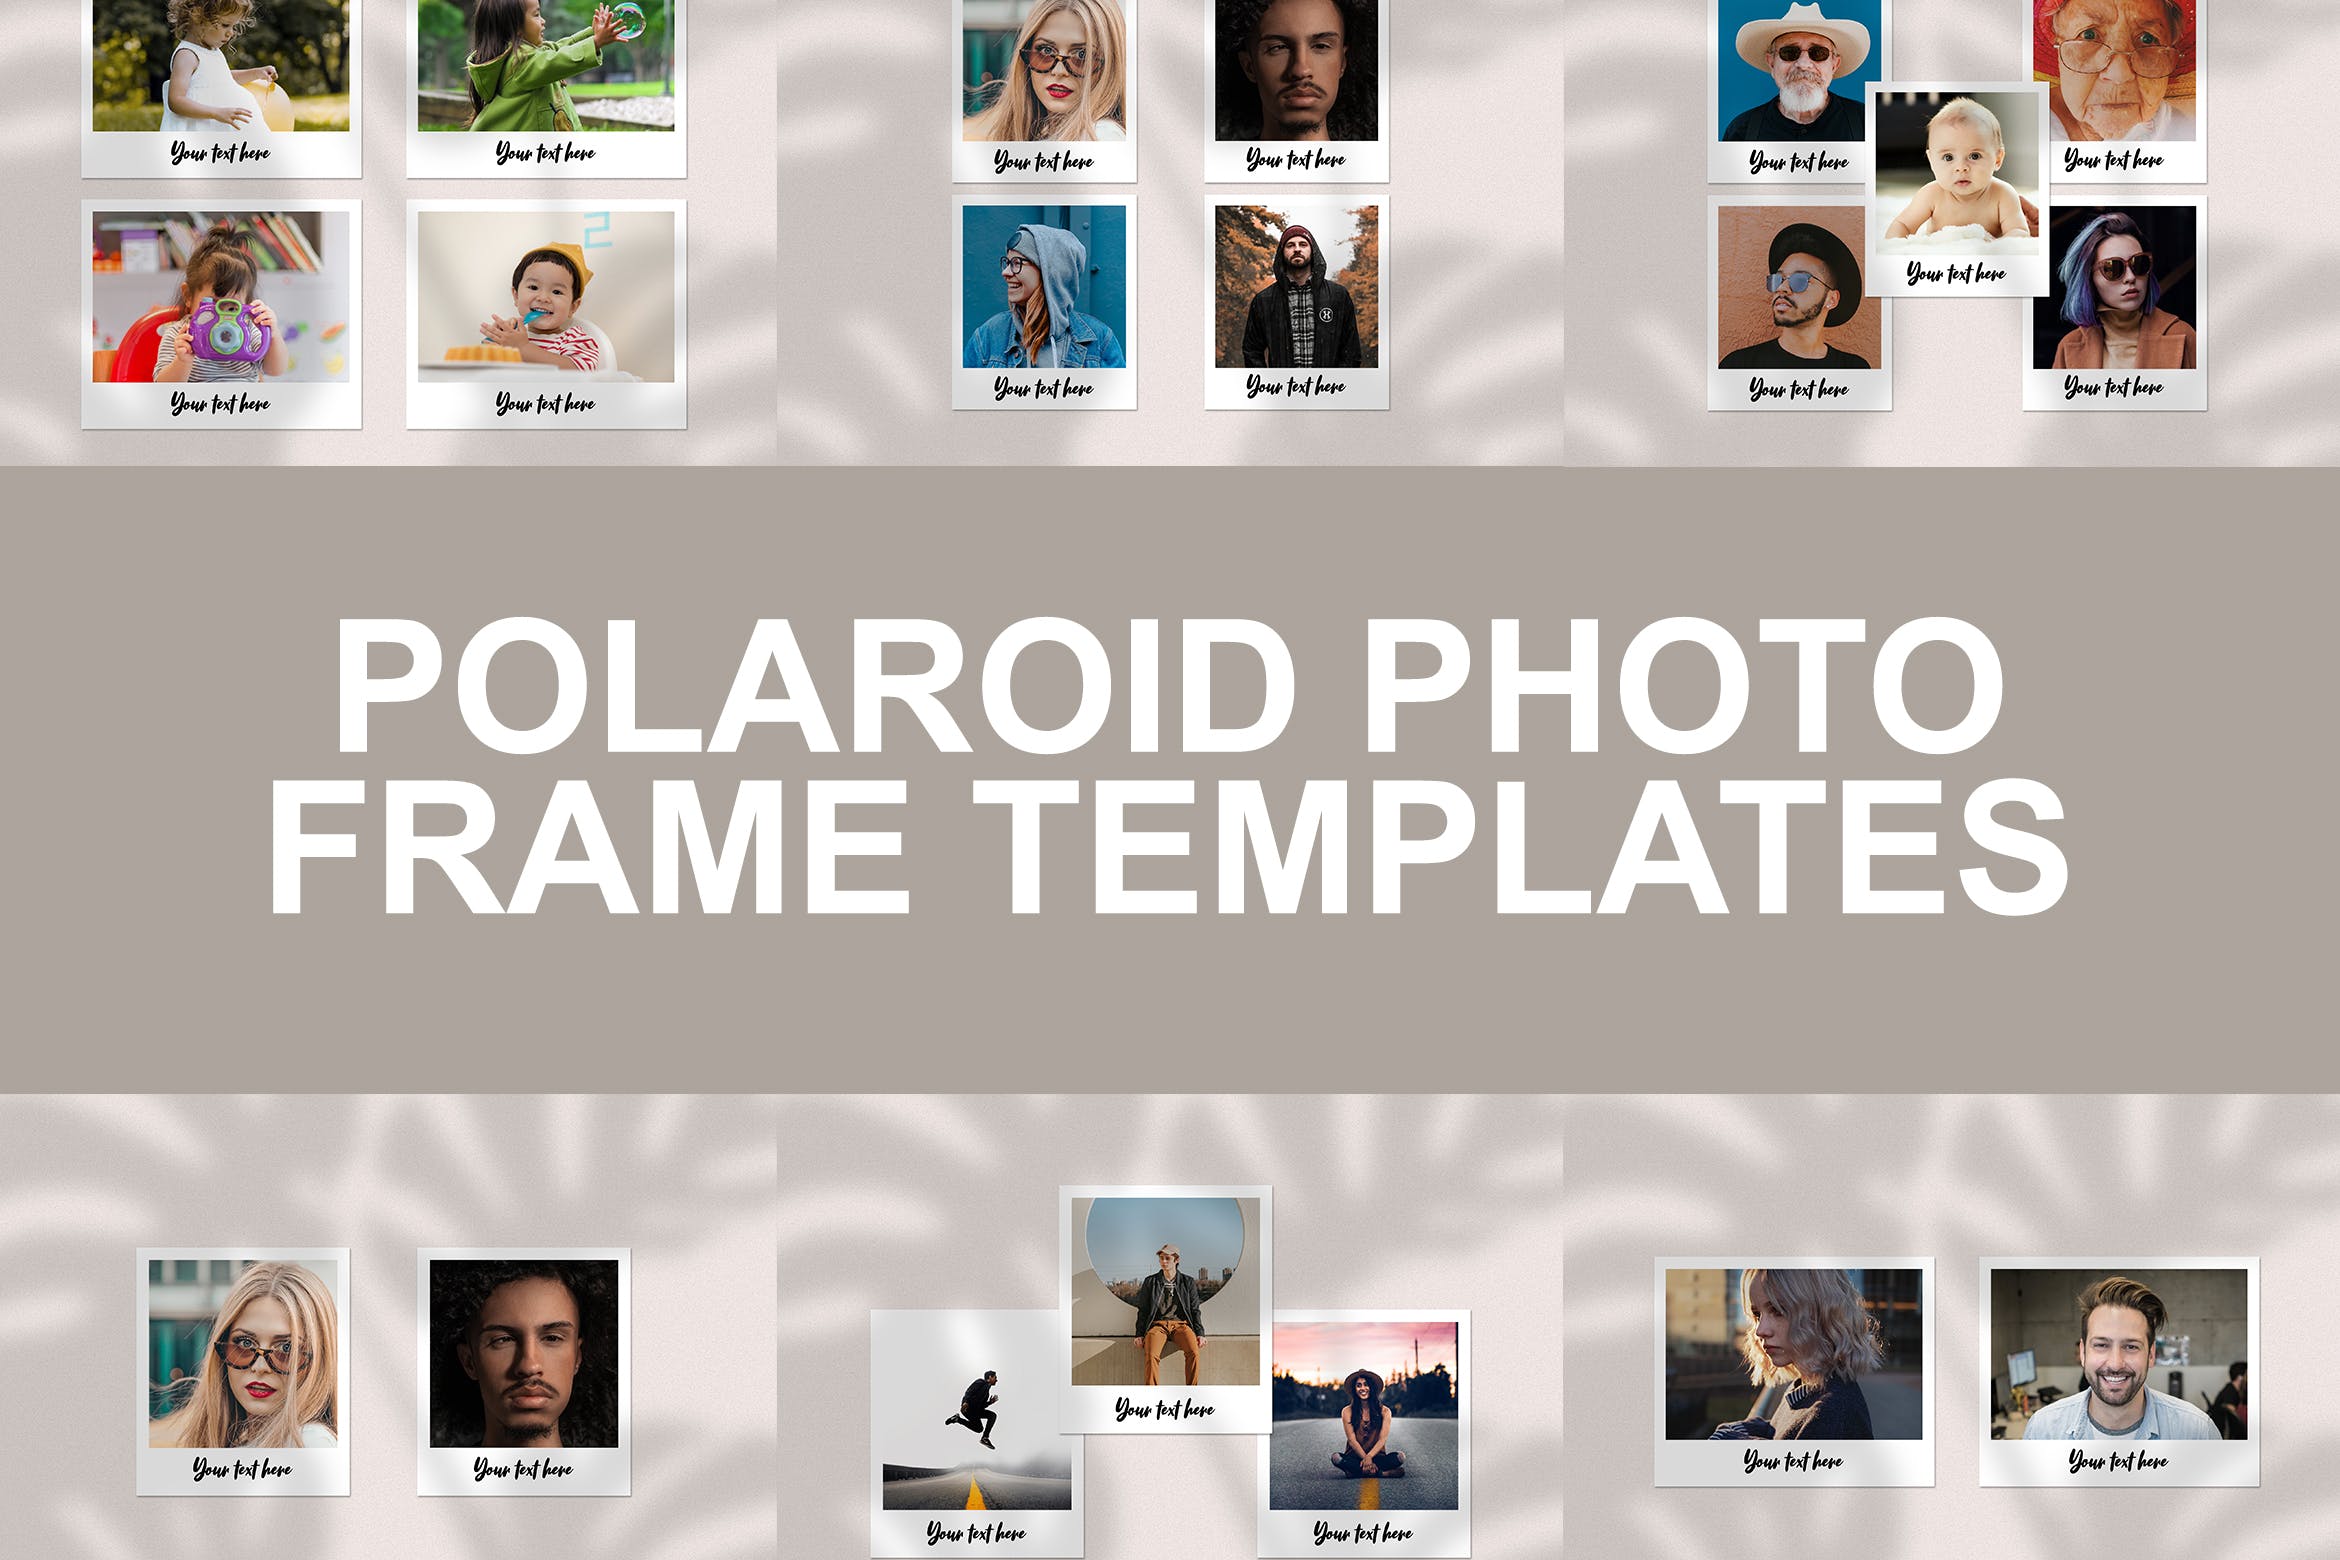 宝丽来风格照片相框样机素材库精选模板 Polaroid Photo Frame Templates插图